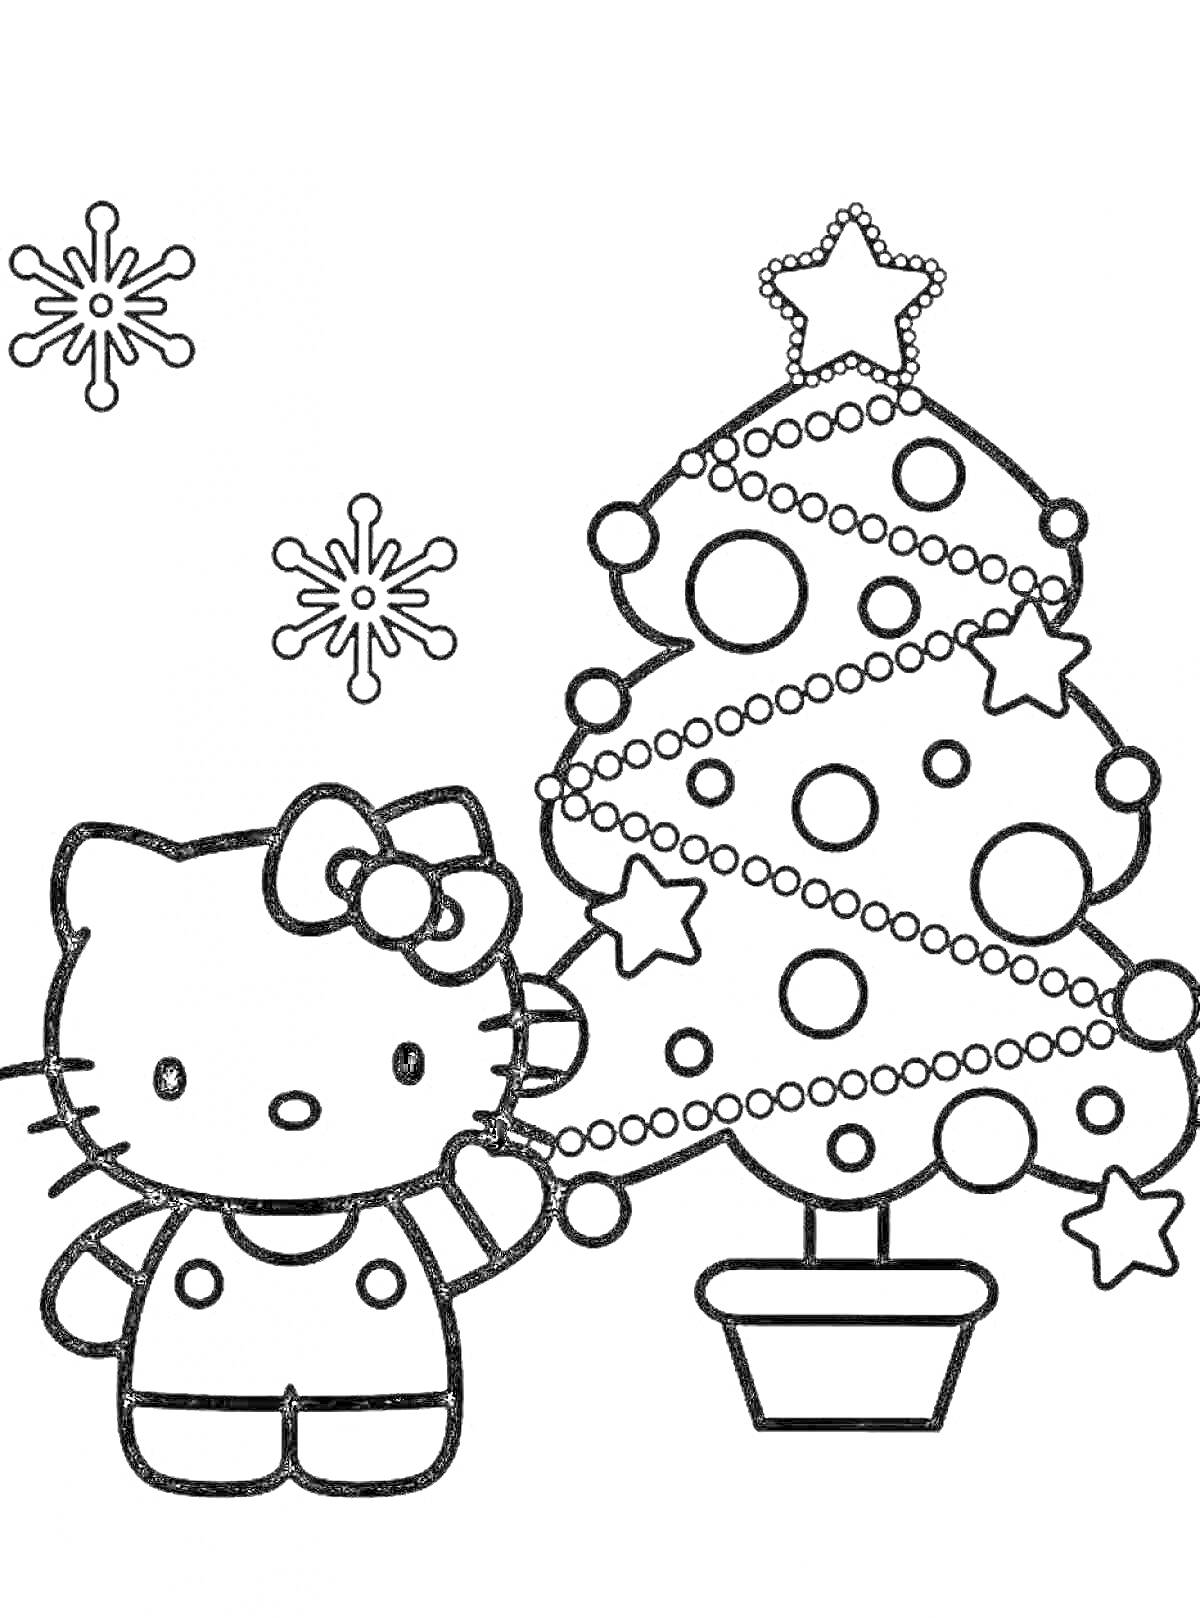 Раскраска Китти рядом с новогодней елкой с украшениями и снежинками